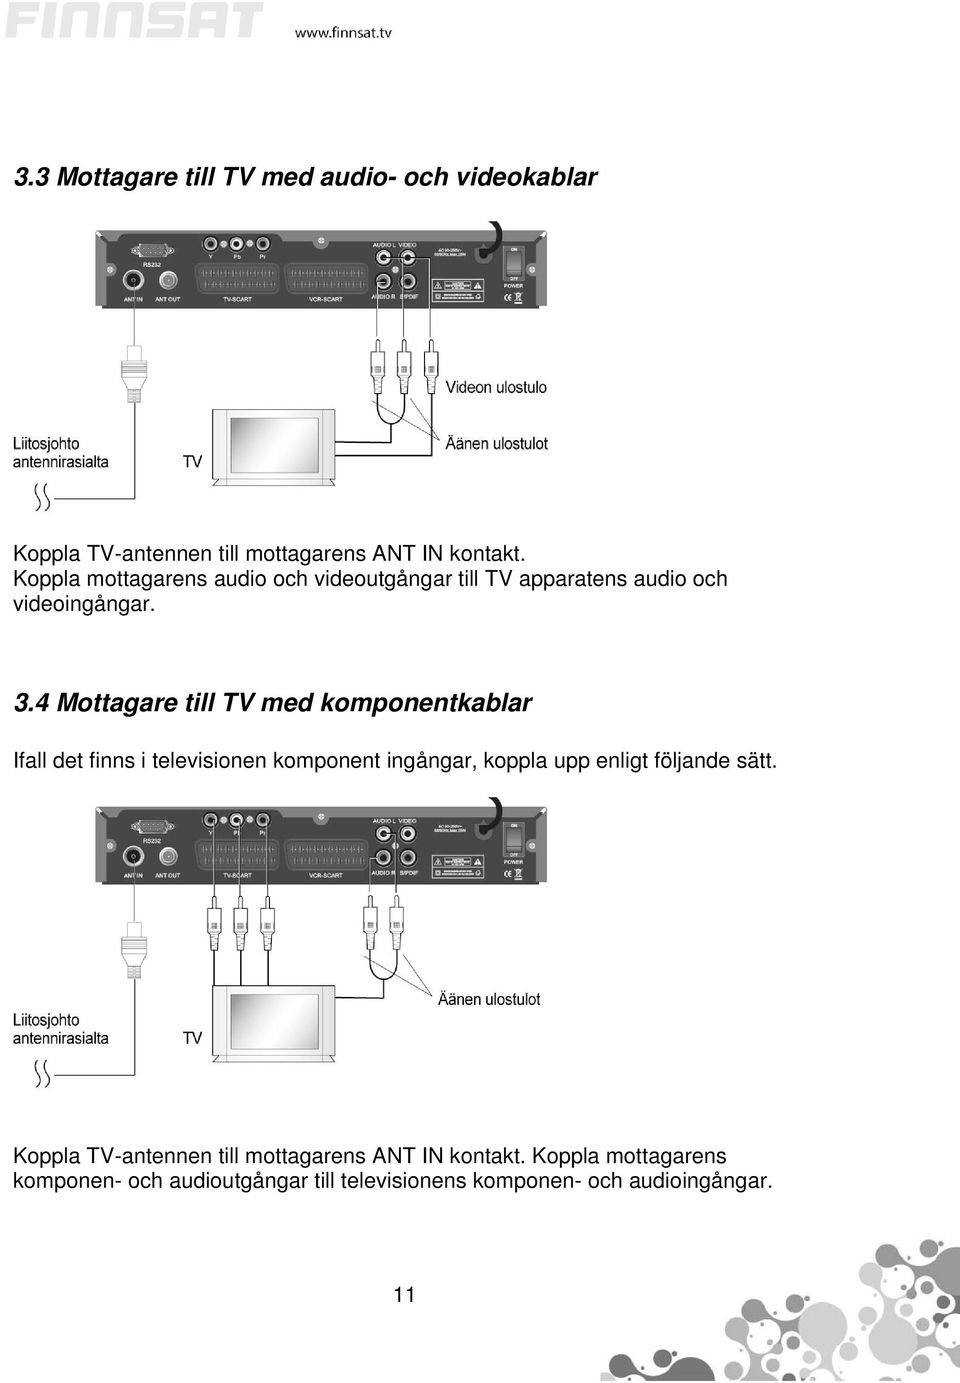 4 Mottagare till TV med komponentkablar Ifall det finns i televisionen komponent ingångar, koppla upp enligt